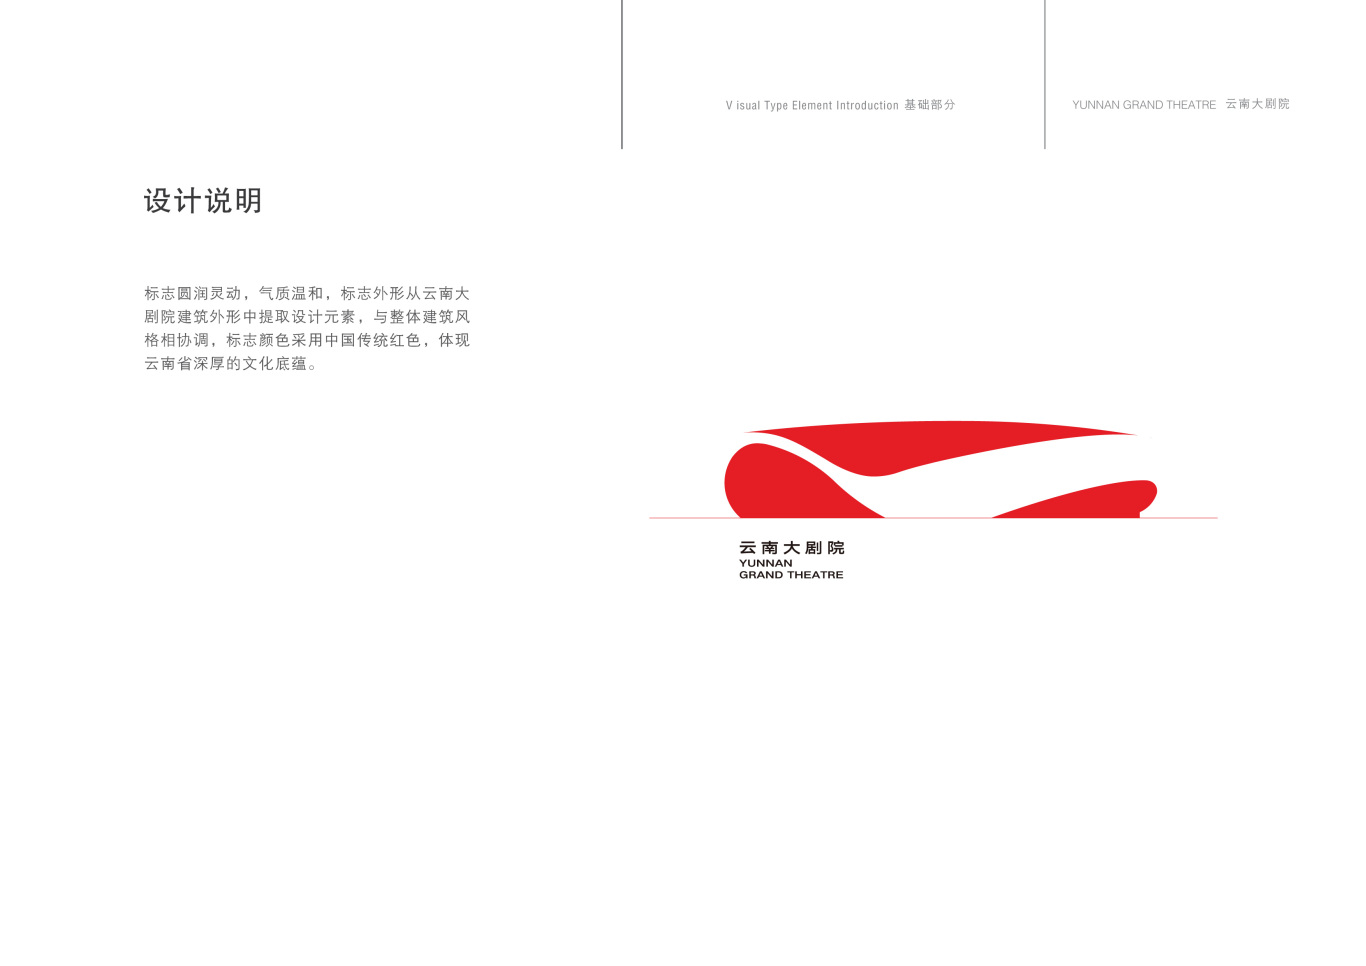 云南省大剧院标志设计图2